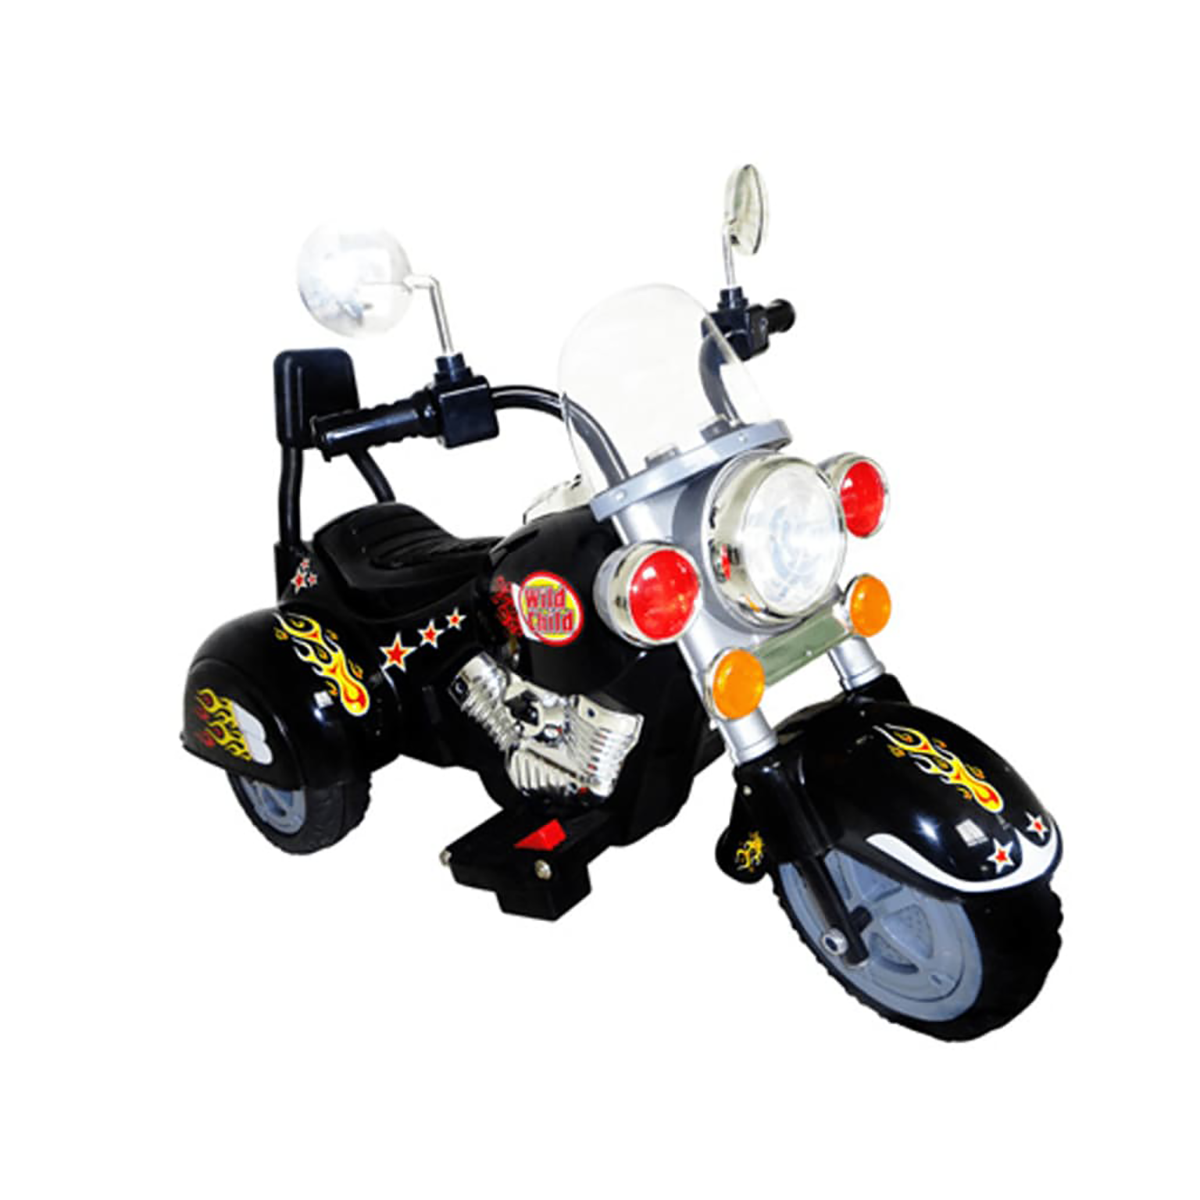 Kinder Motorrad Chopper VIDAXL Kinderfahrzeug